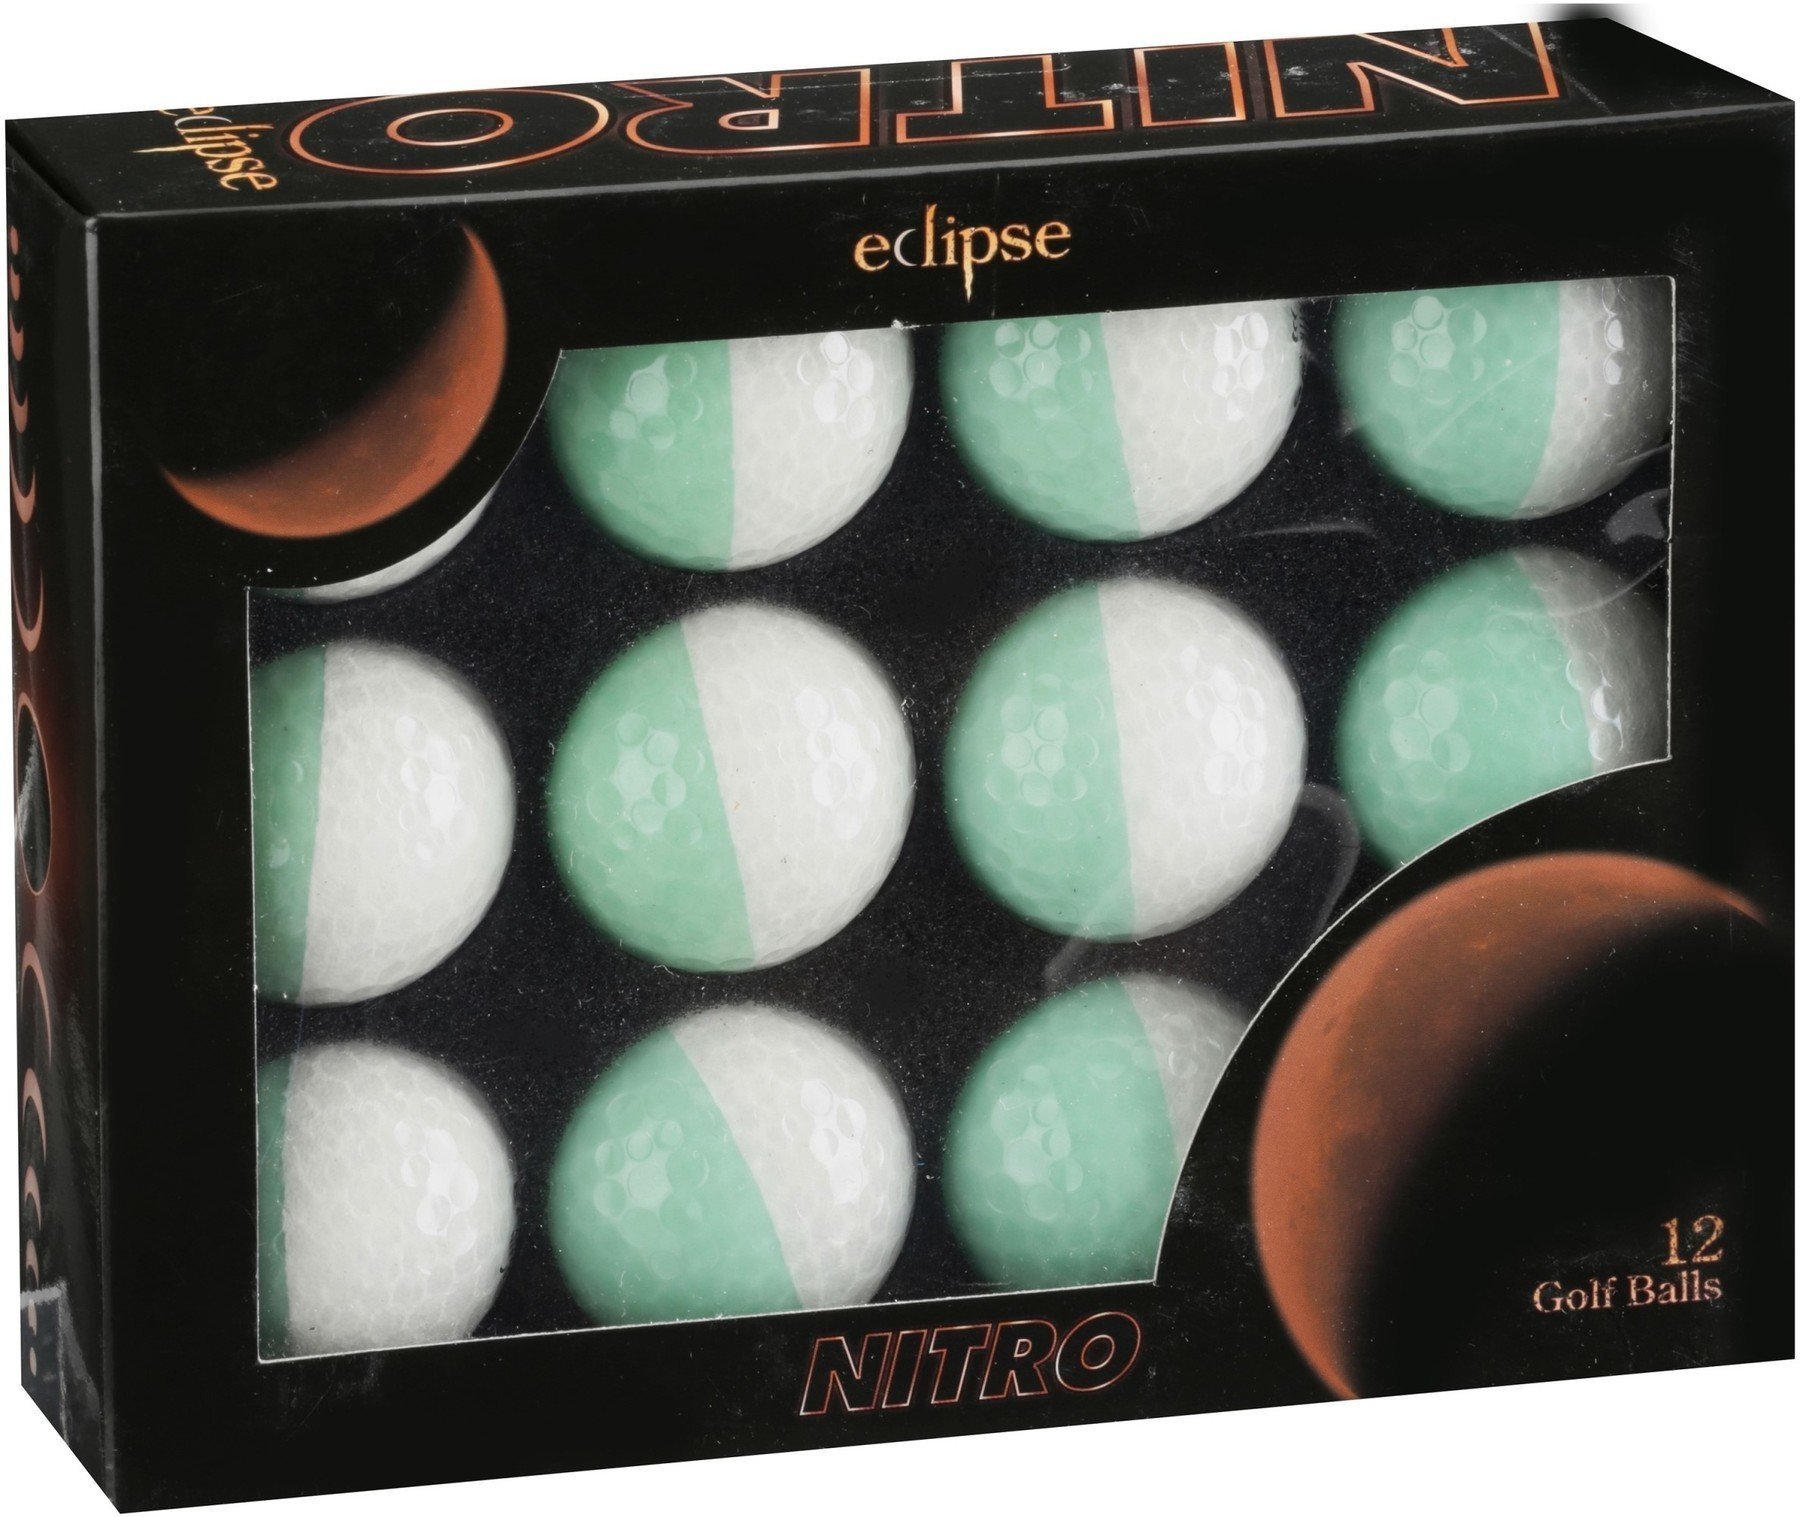 Golf Balls Nitro Eclipse White/Mint